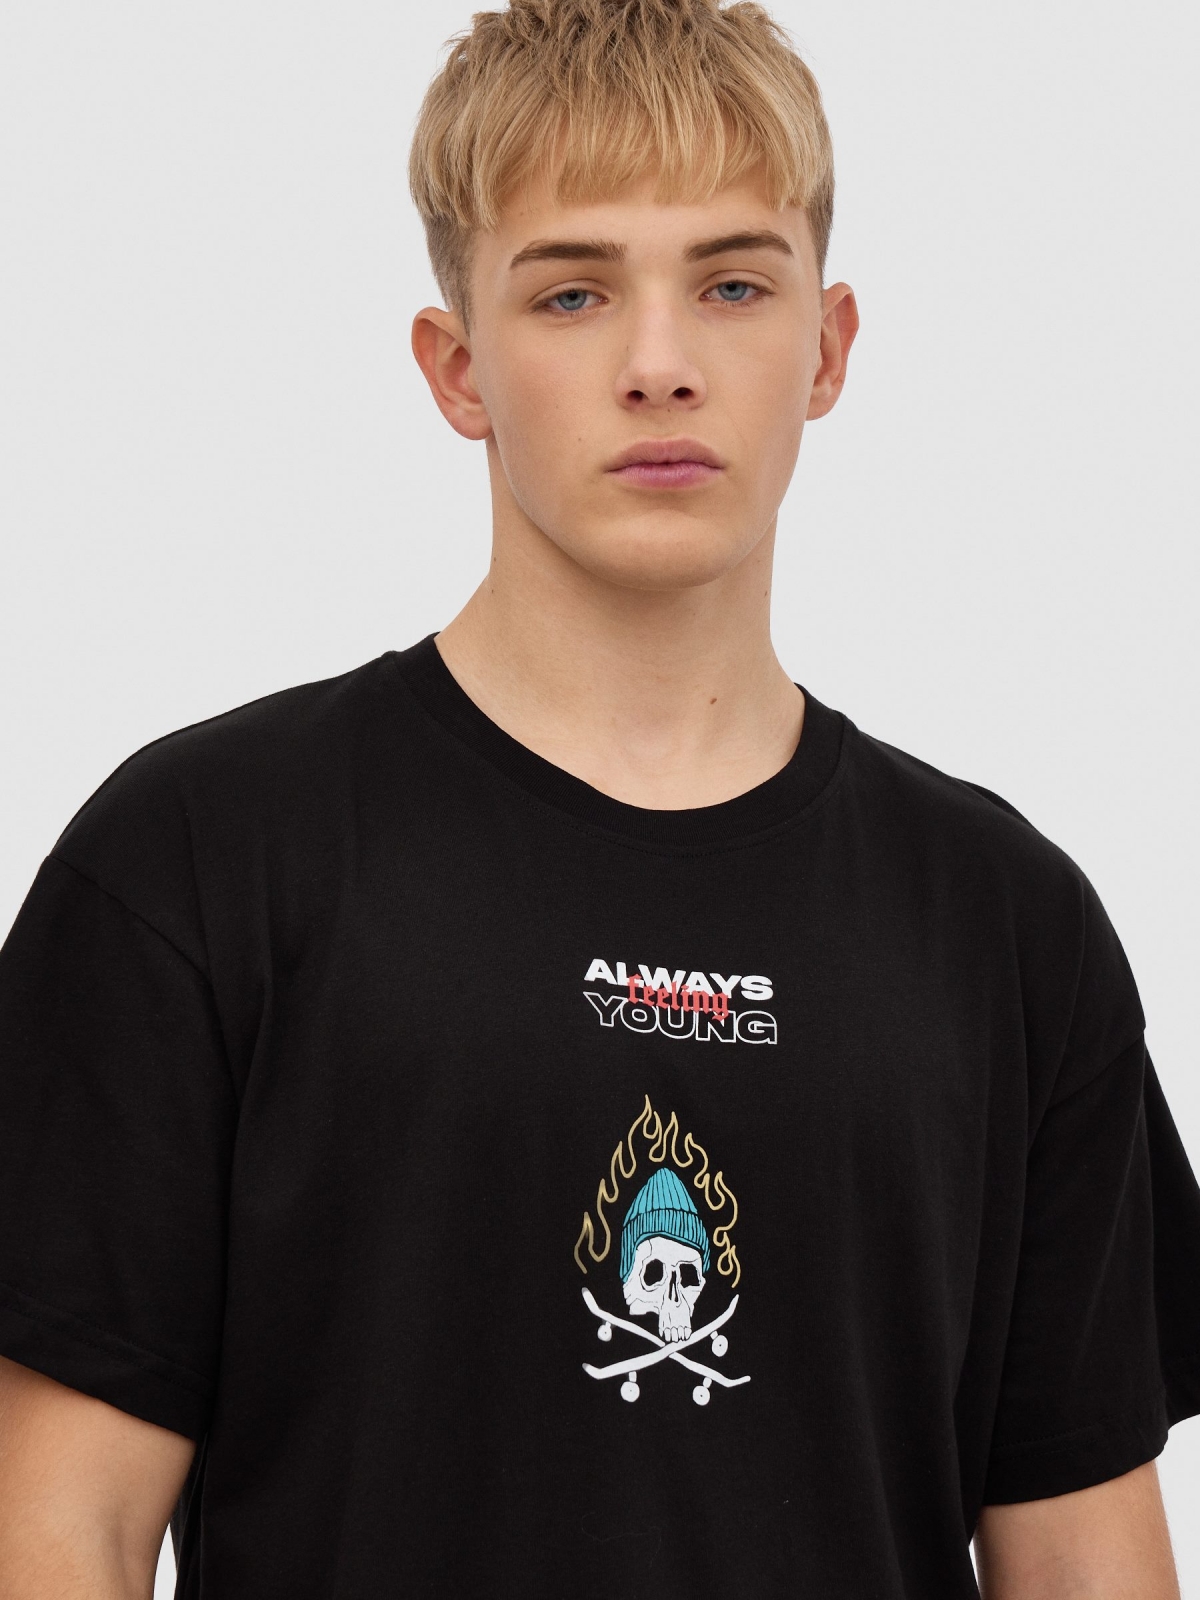 Skateboarder skull t-shirt black detail view